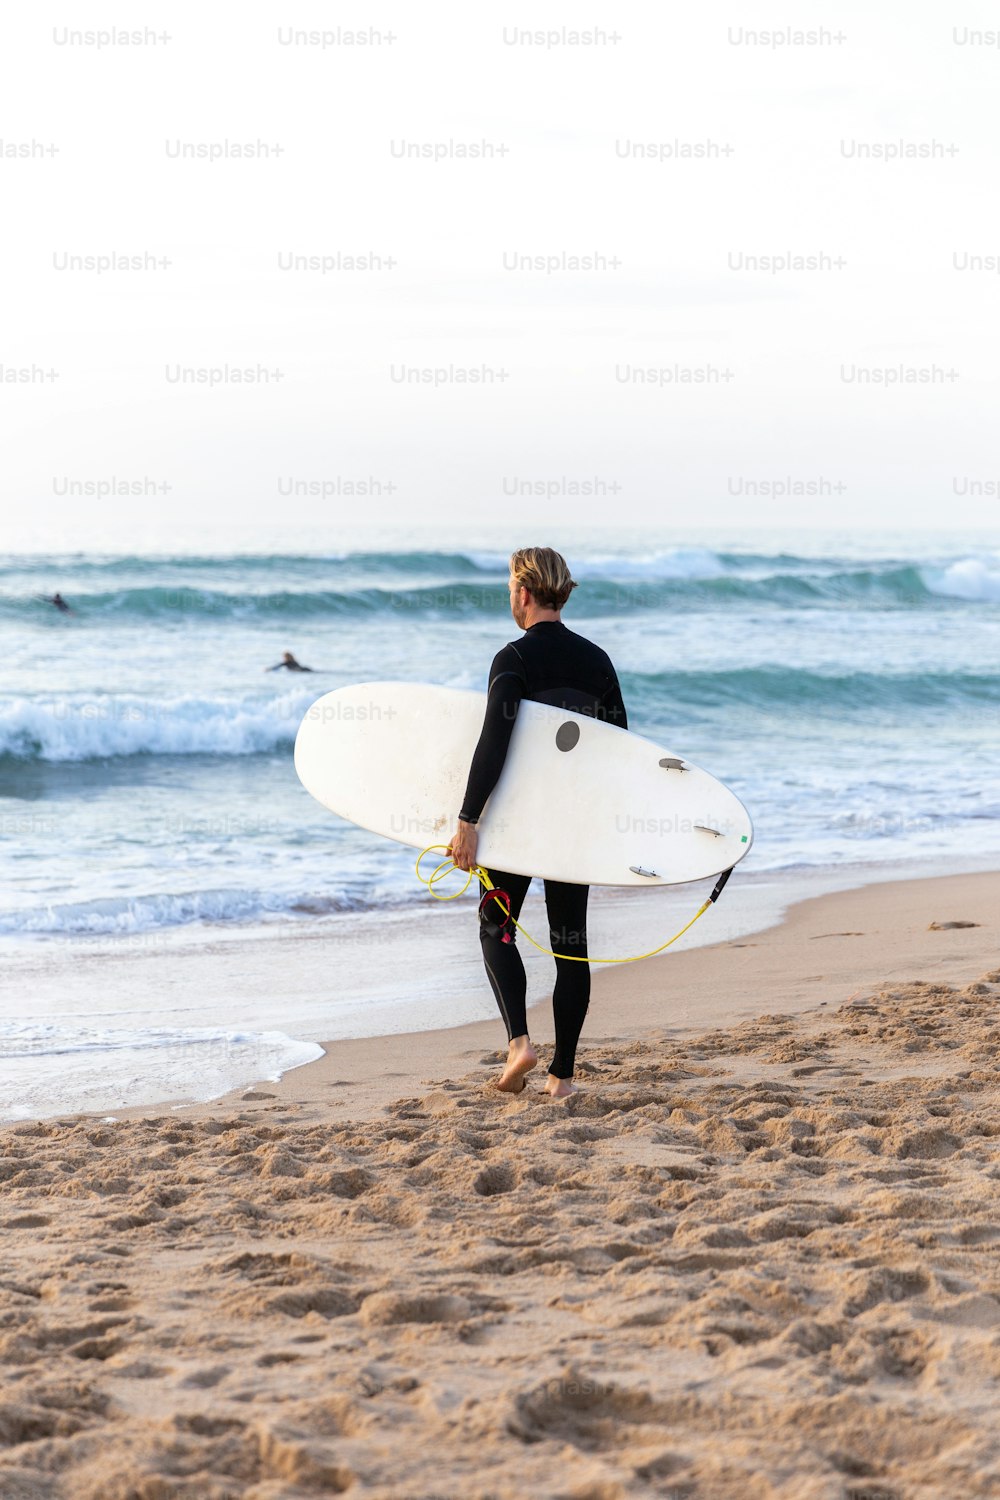 Un uomo in una muta che trasporta una tavola da surf su una spiaggia